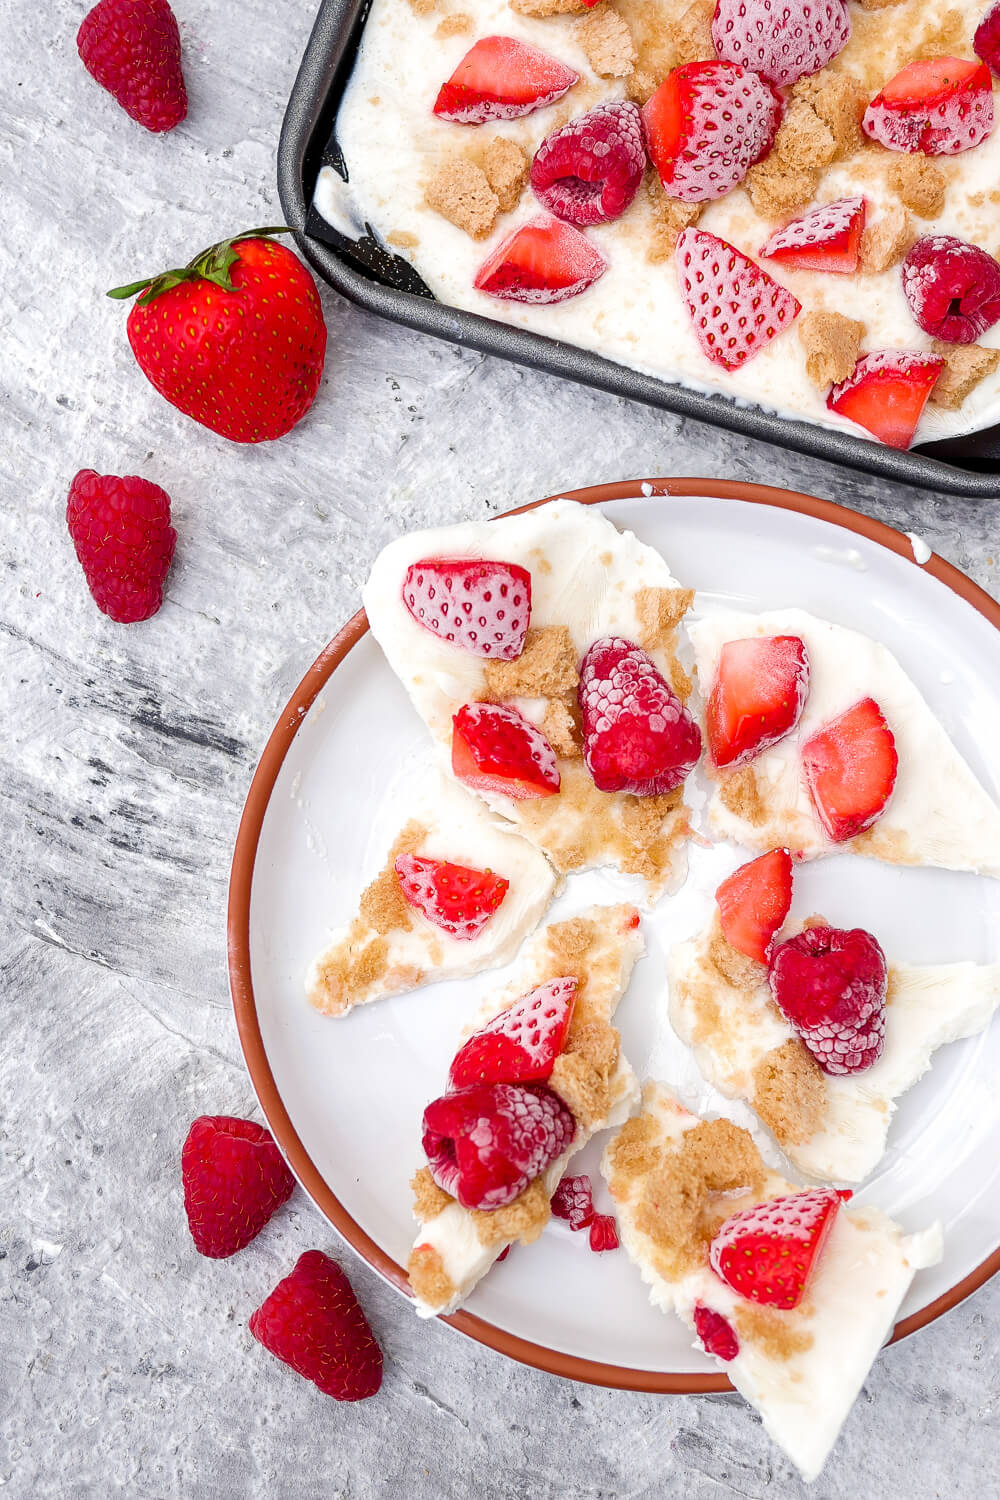 Rezept für Frozen Joghurt Stücke mit Himbeeren und Erdbeeren - der gesunde Eis-Genuss im Sommer